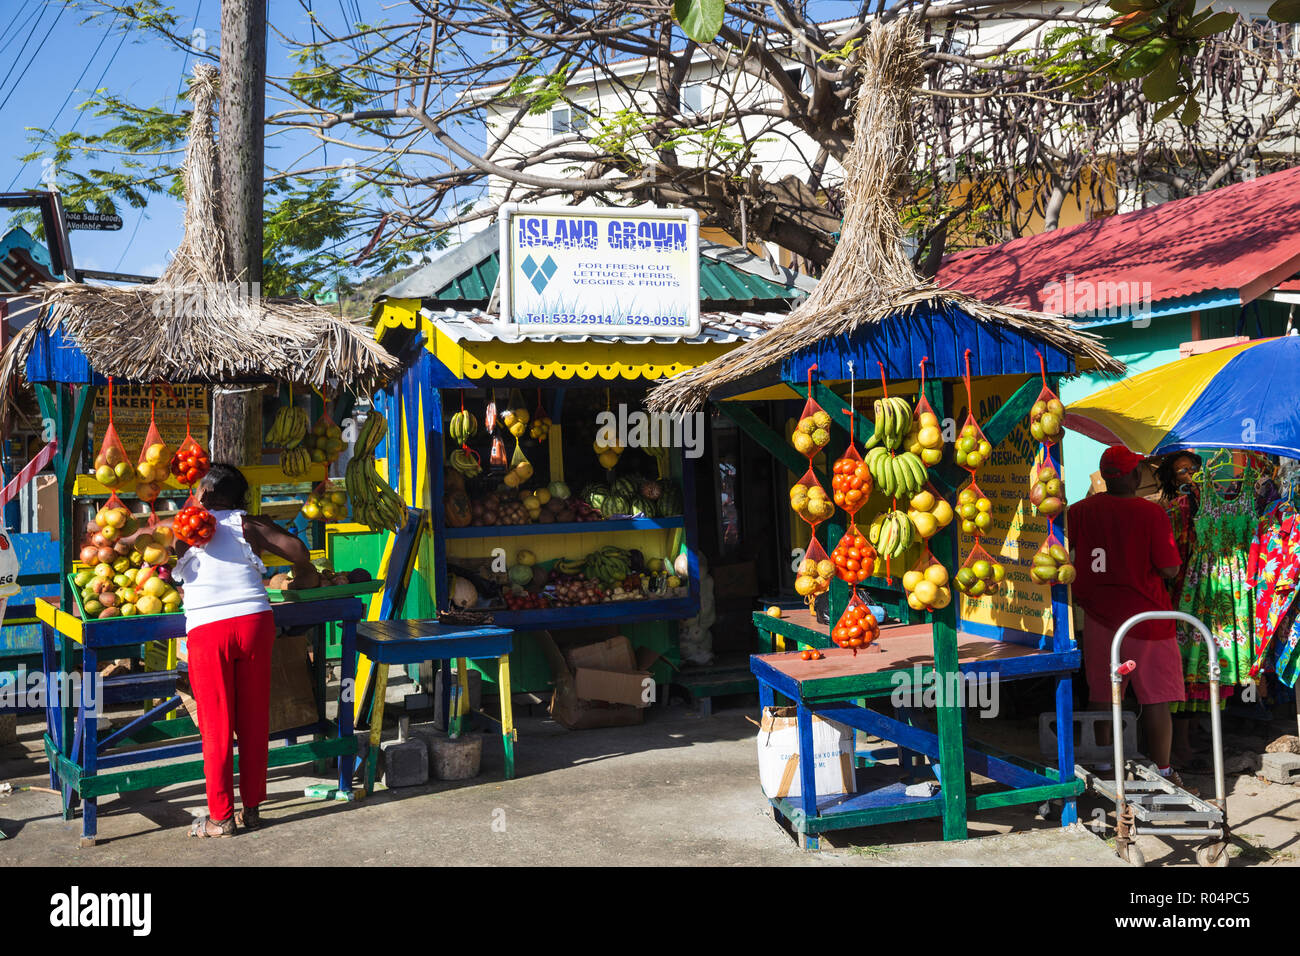 Markt im Freien, Clifton, Union Island, den Grenadinen, St. Vincent und die Grenadinen, Karibik, Karibik, Zentral- und Lateinamerika Stockfoto